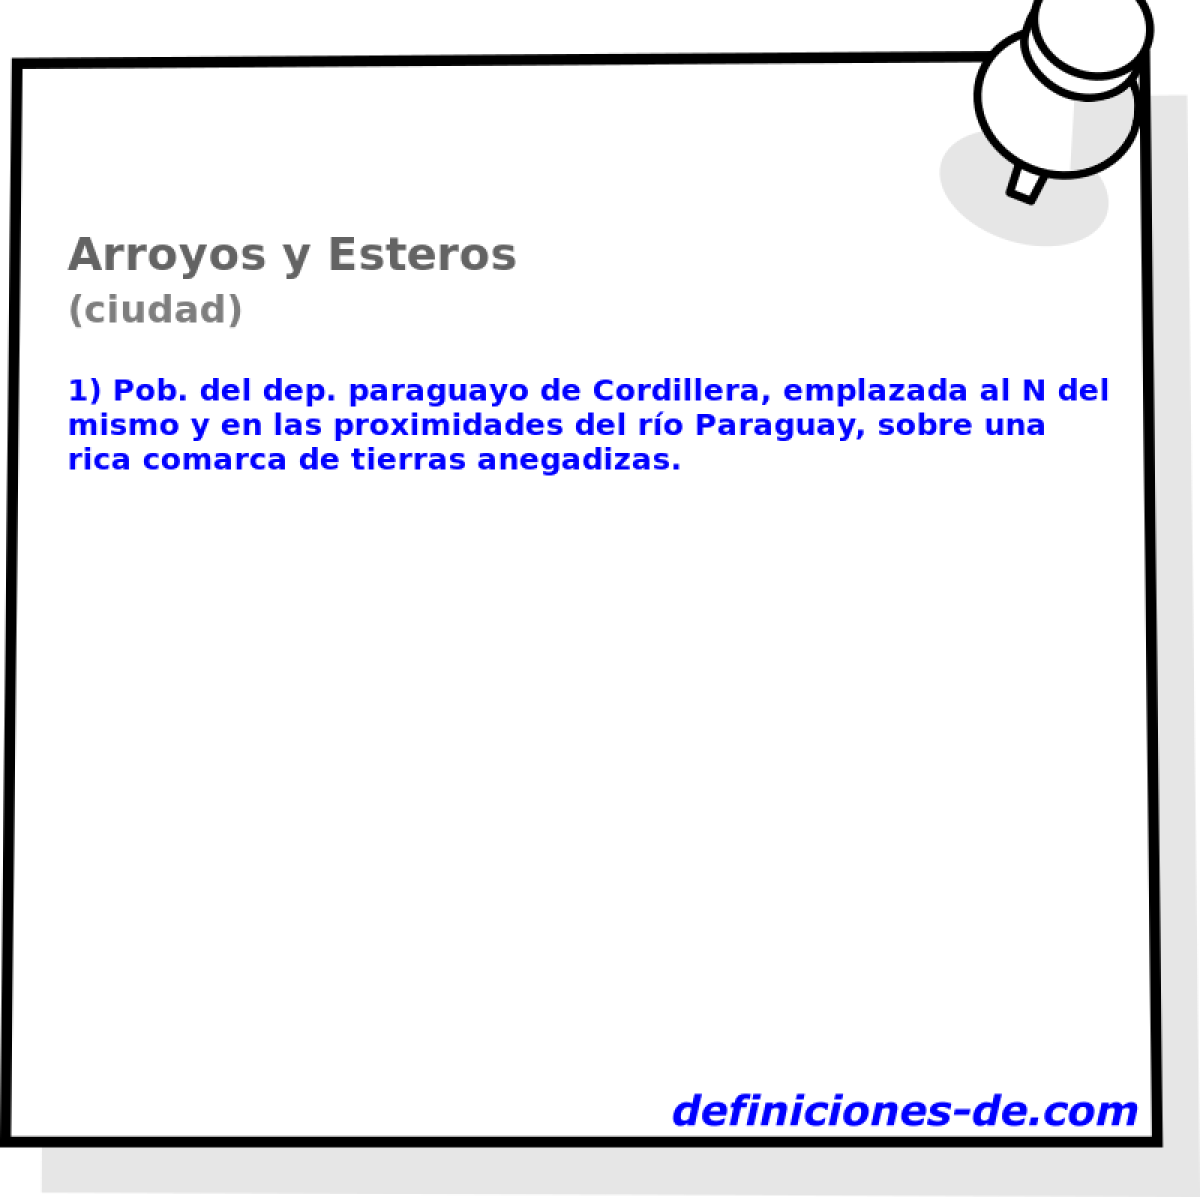 Arroyos y Esteros (ciudad)